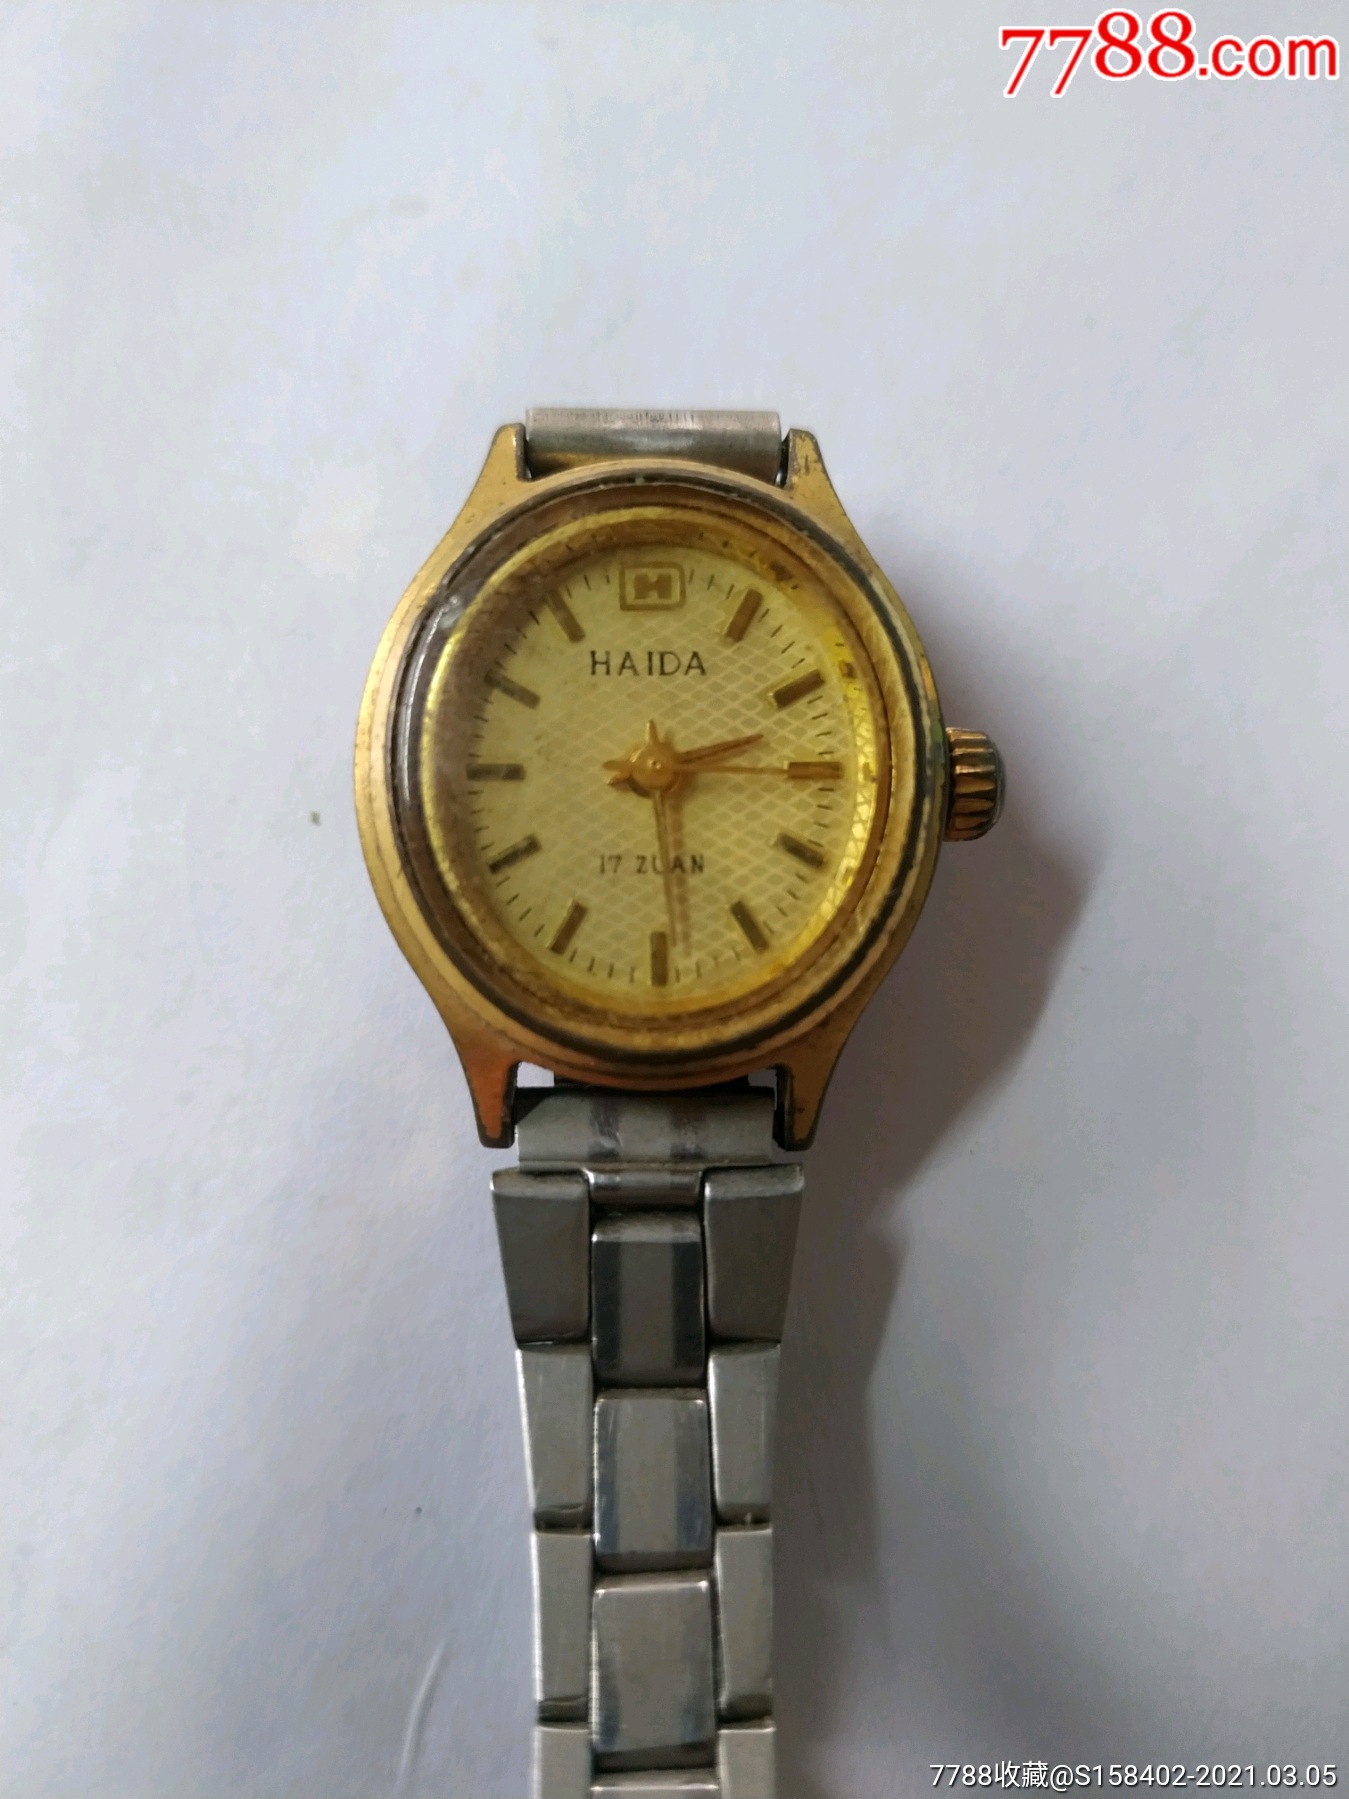 海达手表-手表/腕表-7788手表收藏